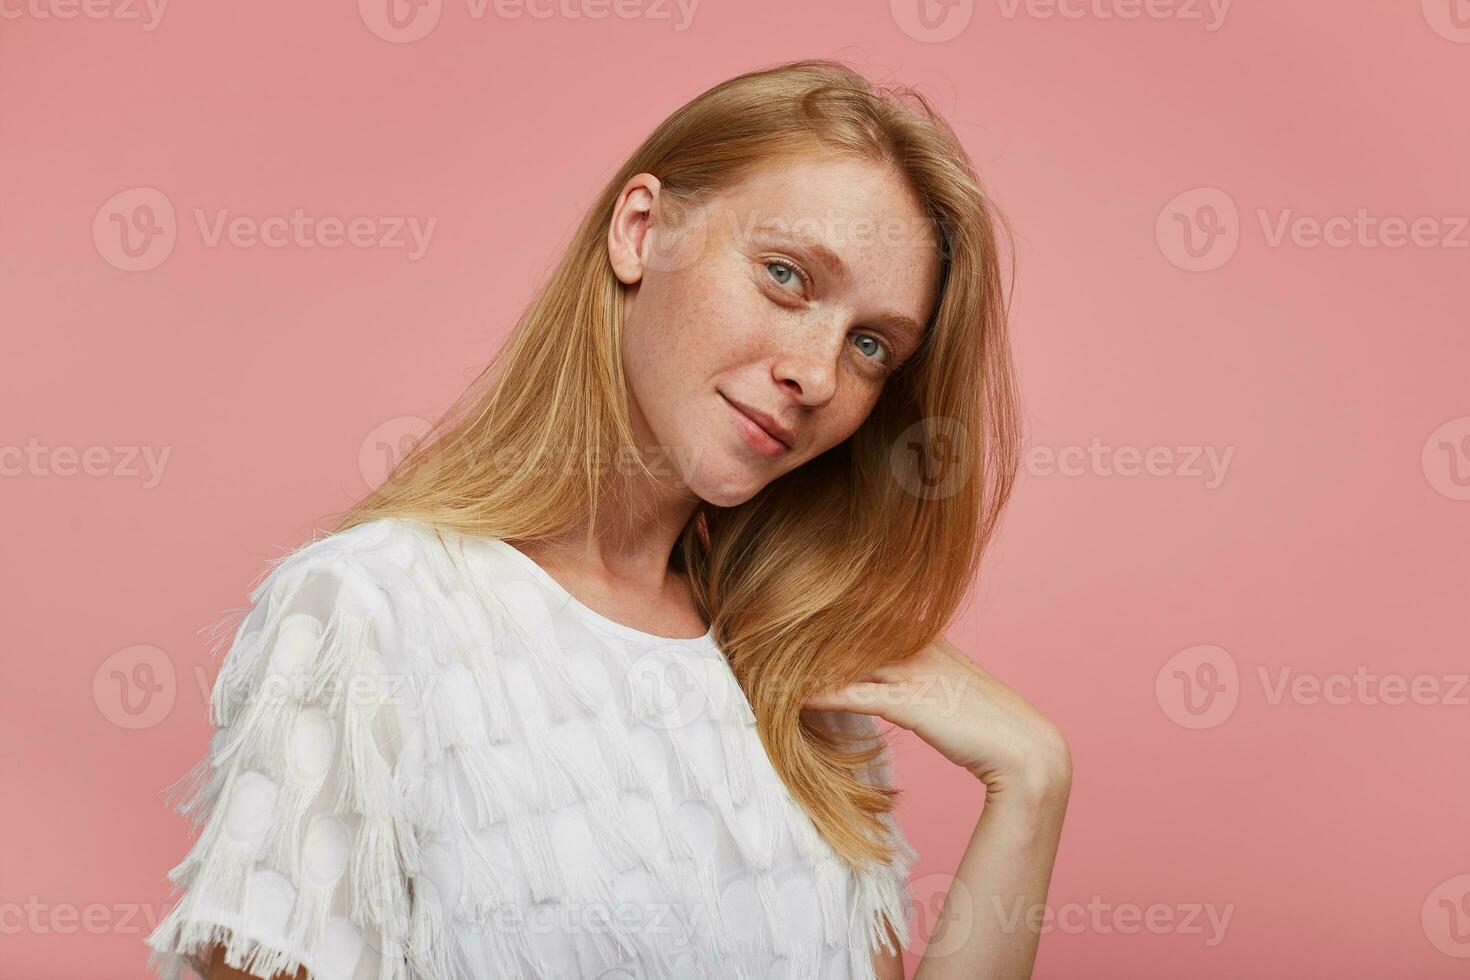 inomhus- Foto av charmig ung rödhårig kvinna med naturlig smink klädd i elegant ha på sig ser positivt på kamera och leende försiktigt, isolerat över rosa bakgrund